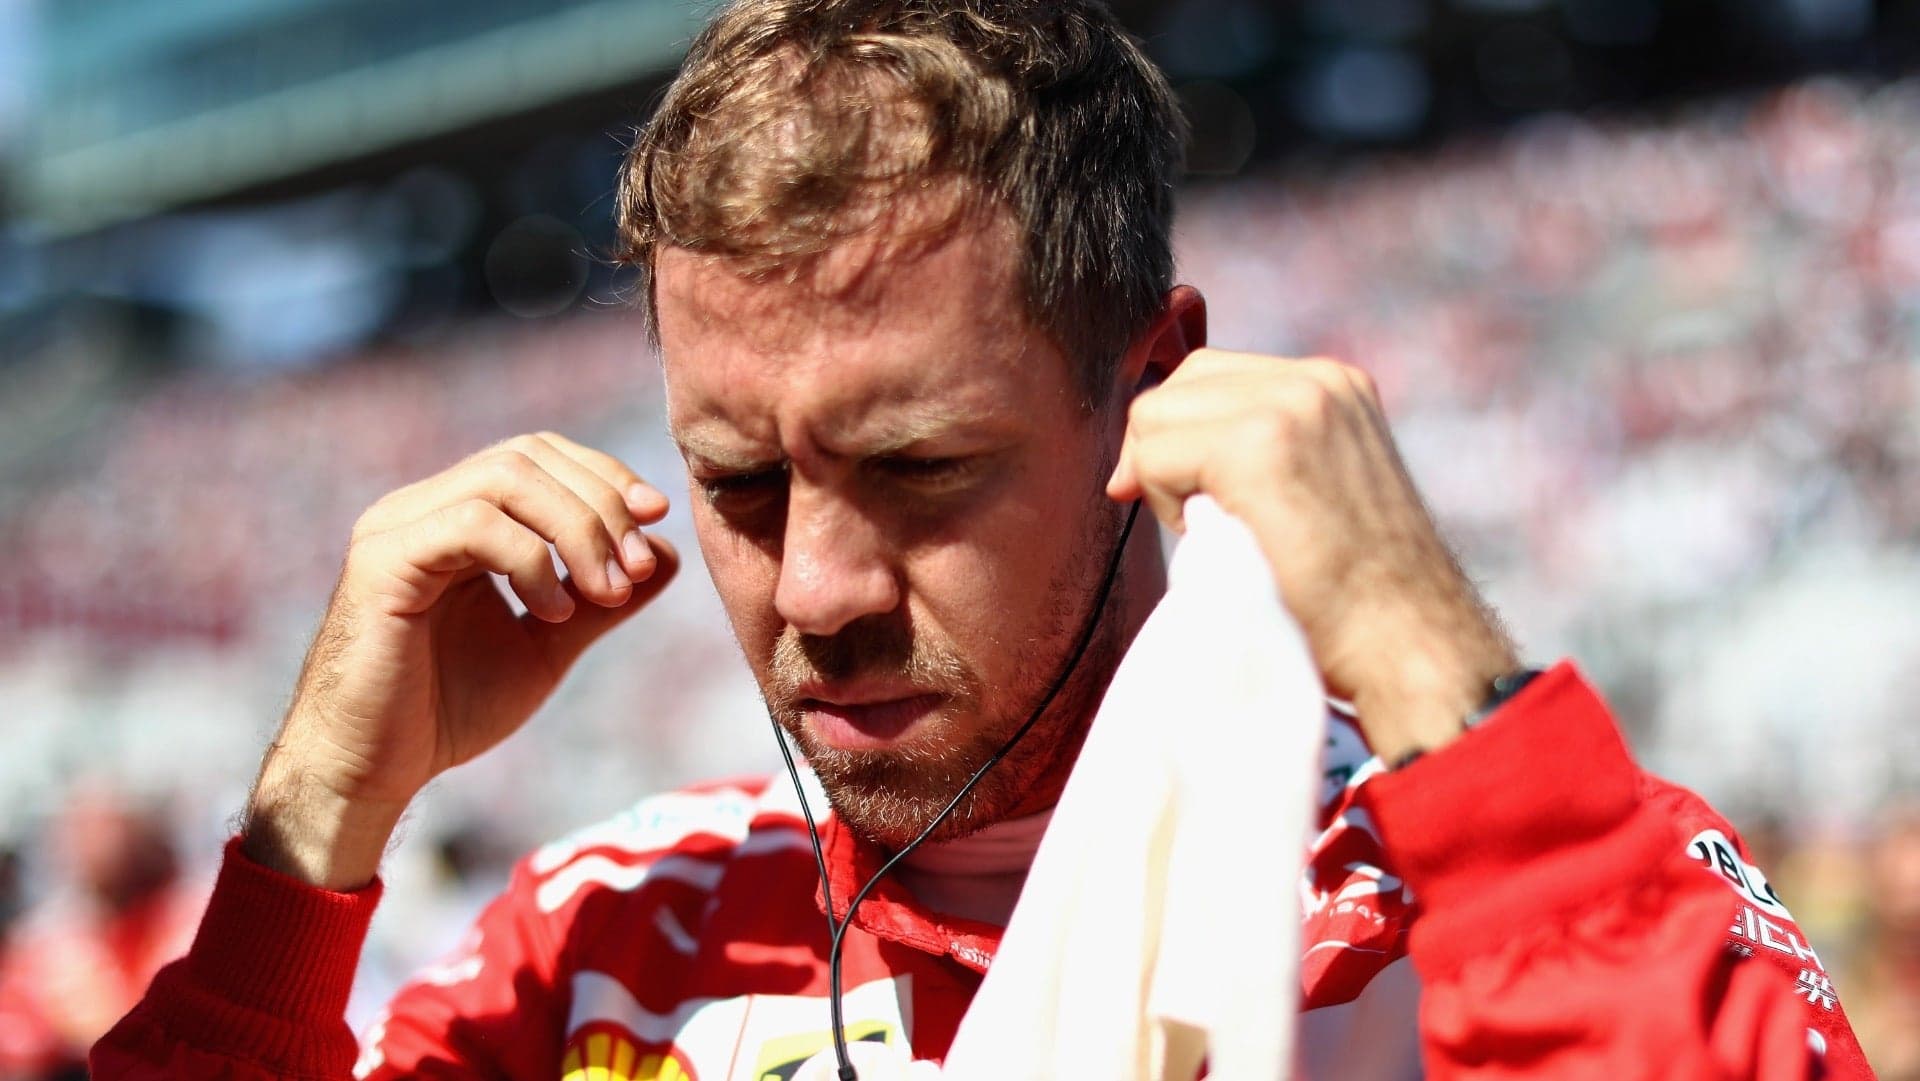 Sebstian Vettel Won’t Be Leaving Ferrari Anytime Soon